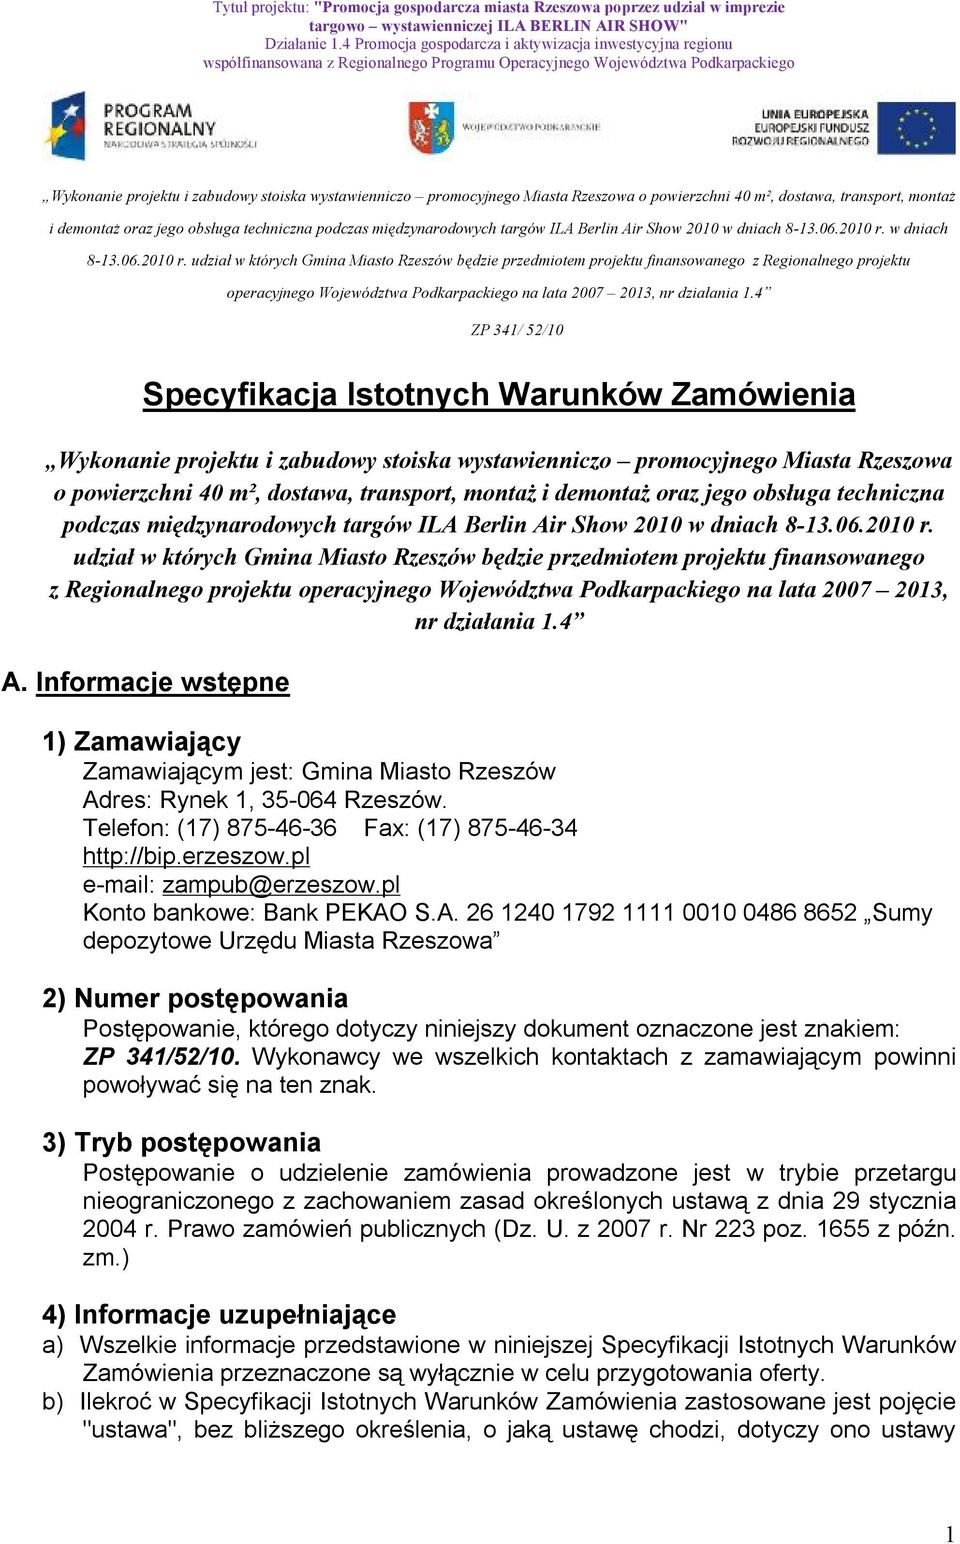 udział w których Gmina Miasto Rzeszów będzie przedmiotem projektu finansowanego z Regionalnego projektu operacyjnego Województwa Podkarpackiego na lata 2007 2013, nr działania 1.4 A.